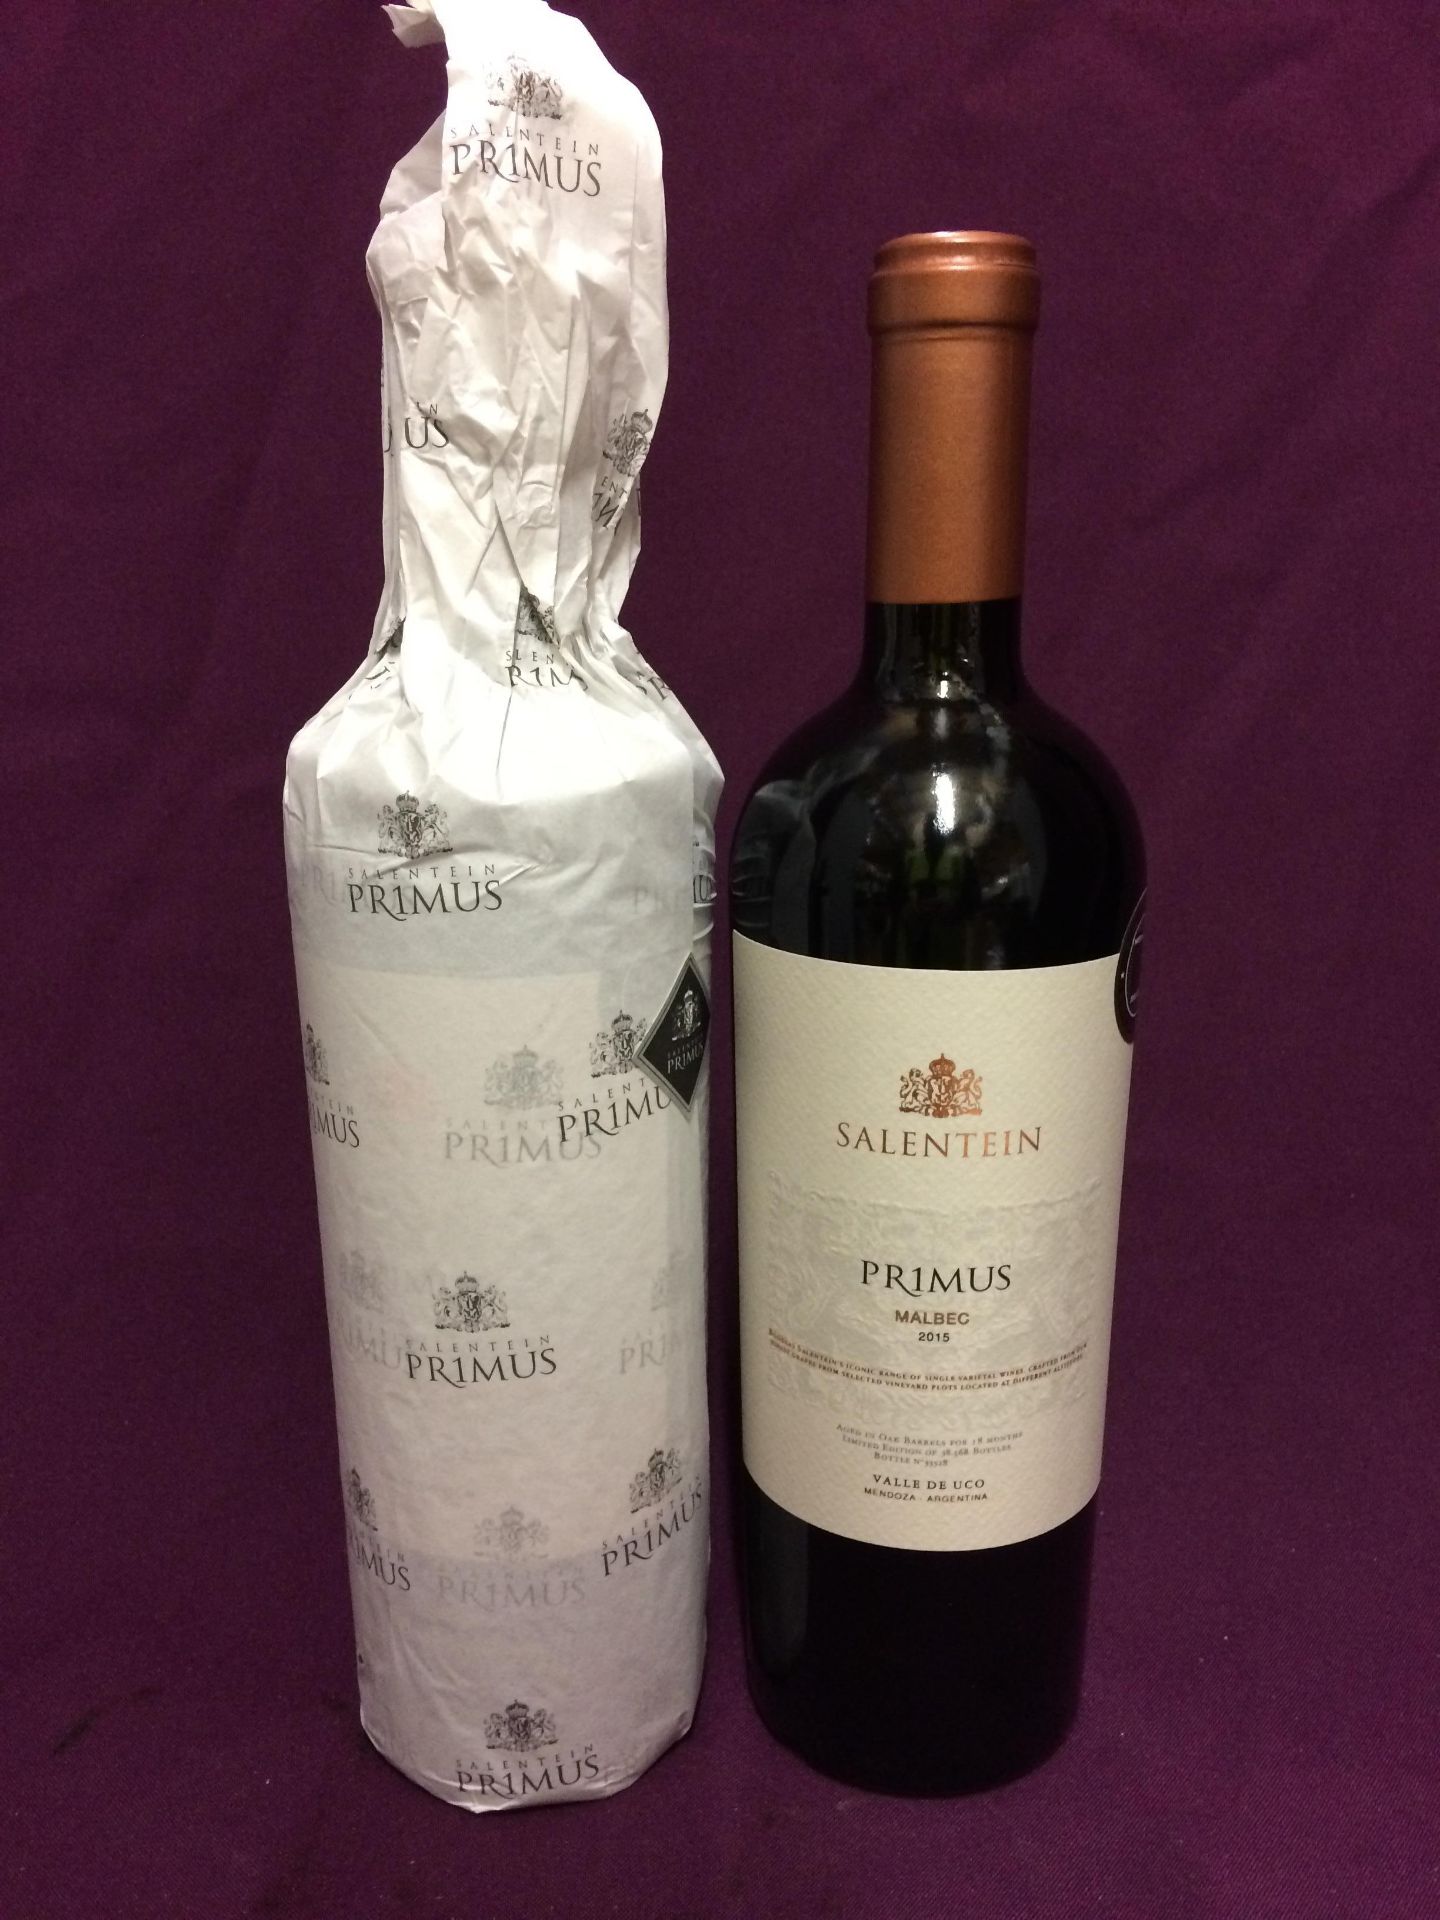 2 x 750ml bottles of Salentein Primus 2015 Malbec Valle De Uco,